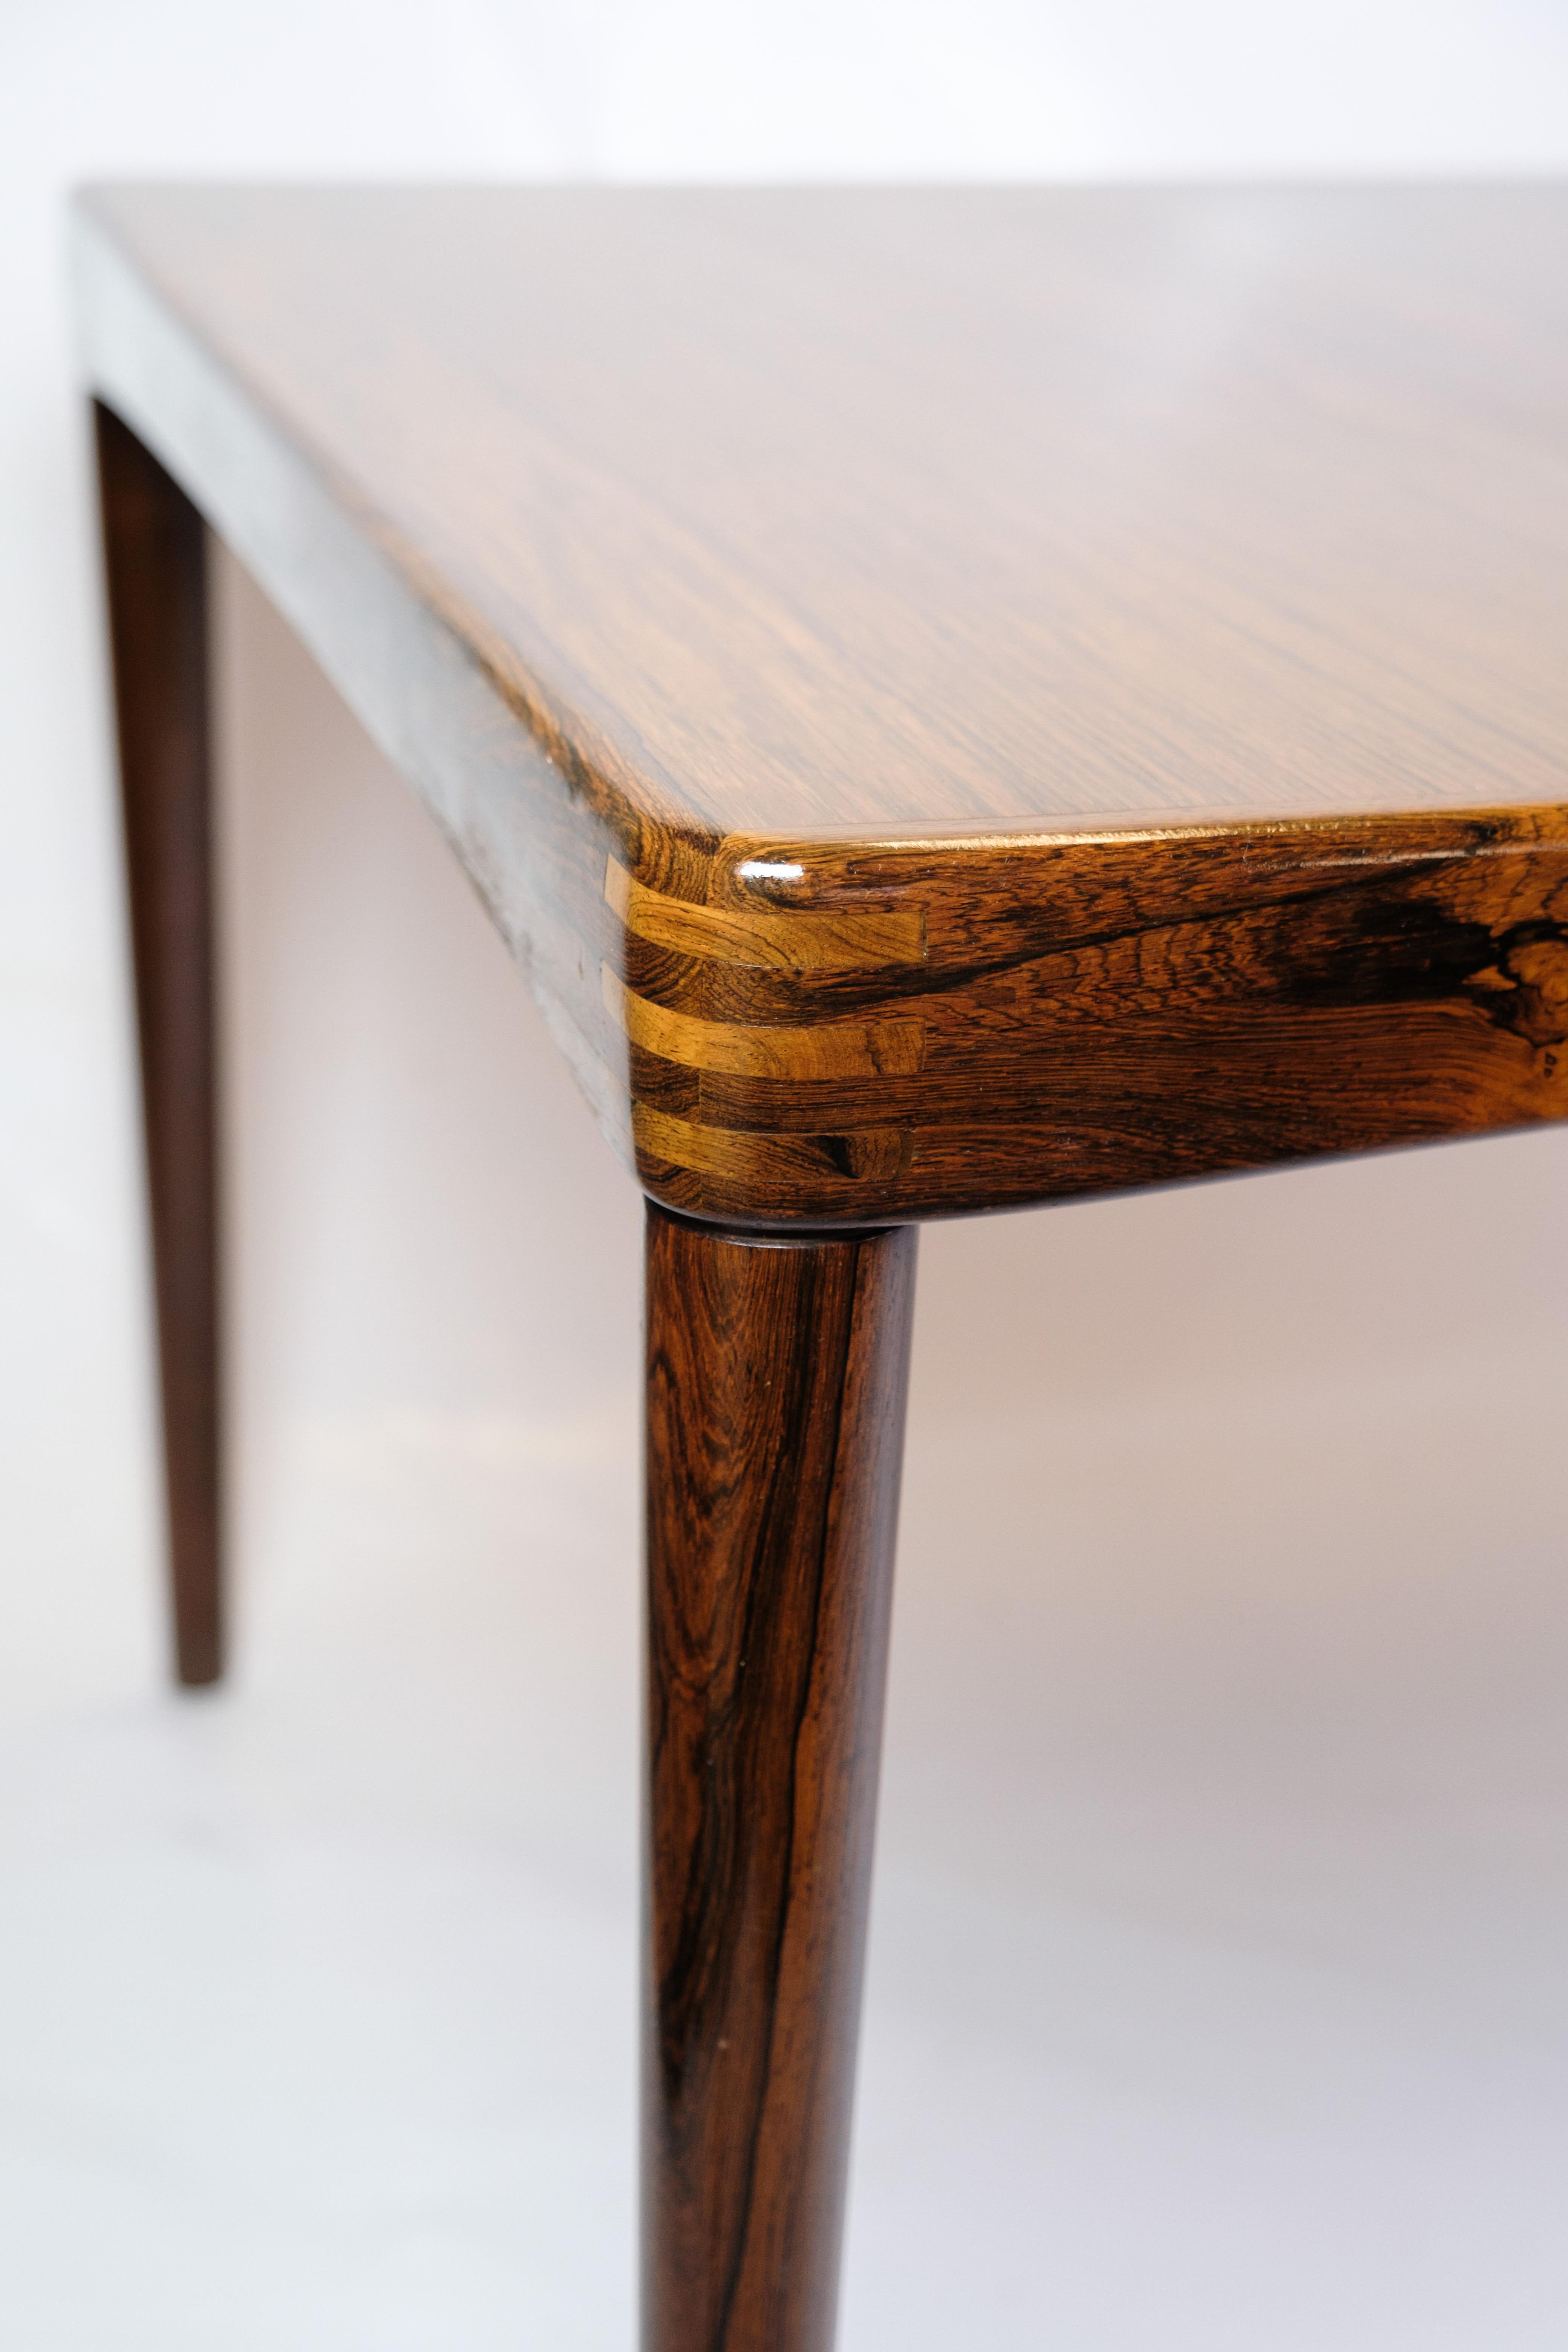 Cette table de salle à manger, fabriquée en bois de rose et avec des joints à tenons, est un bel exemple de l'art mobilier danois des années 1960. Conçue par Henry W. Klein et produite par Bramin, cette table est un sublime mélange d'élégance, de